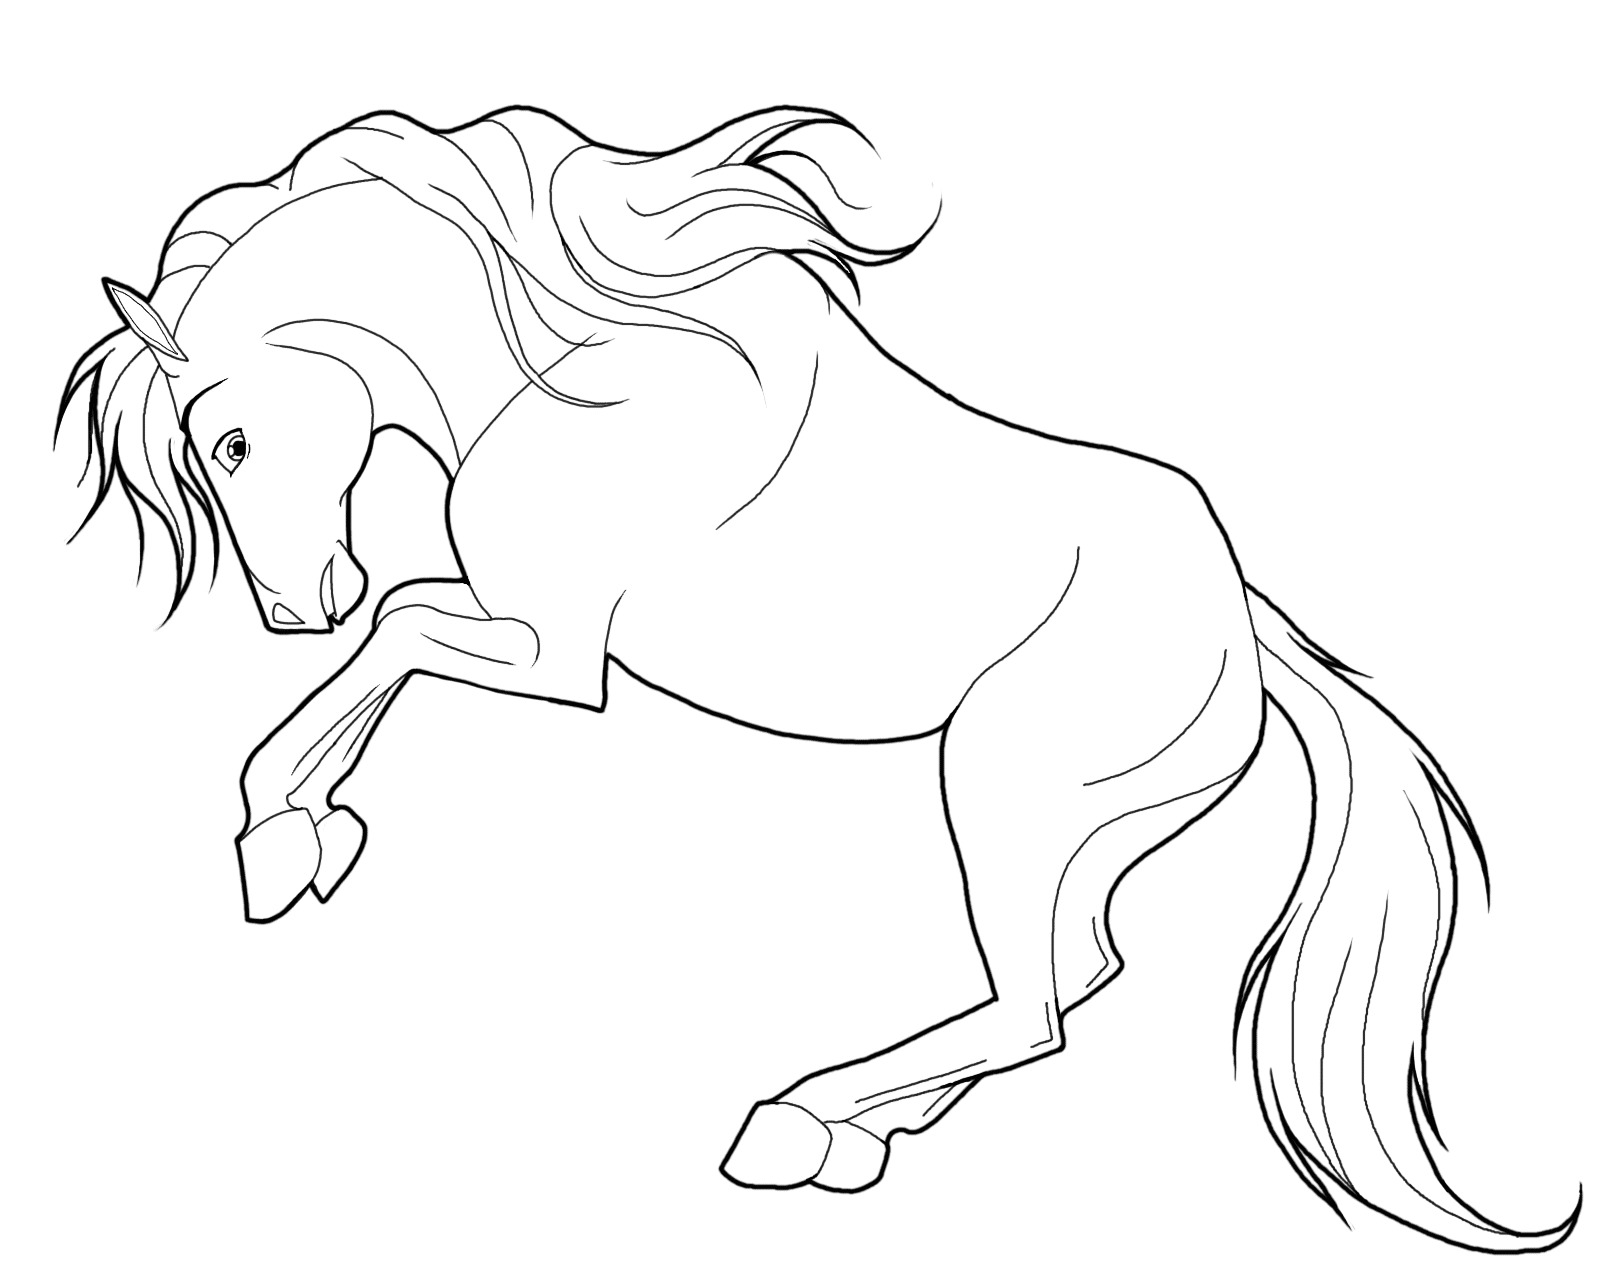 Hướng dẫn vẽ con ngựa bằng bút chì  Vẽ phác thảo hình con ngựa  Draw the  horse with a pencil  YouTube